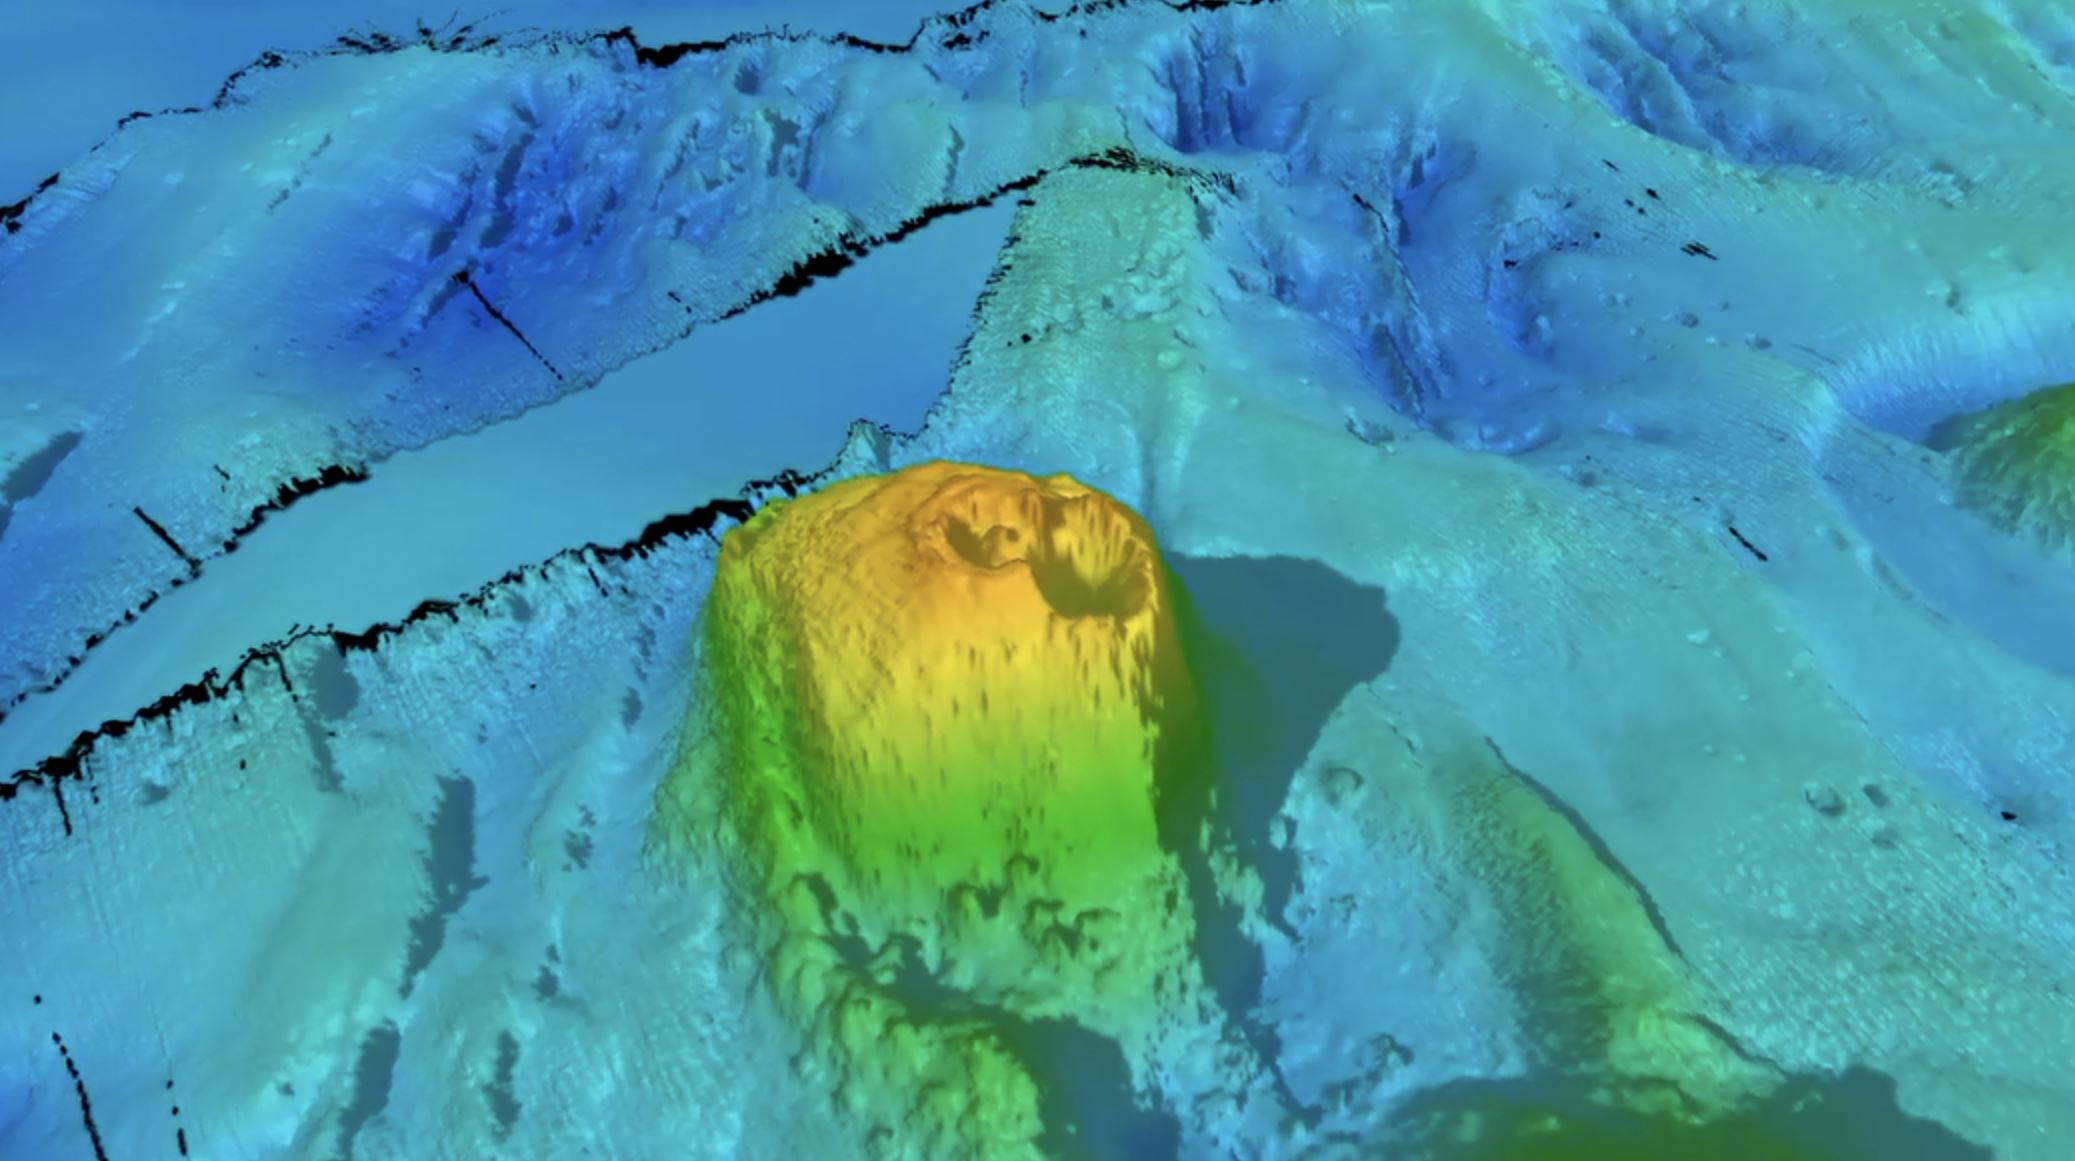 Istraživači su otkrili vulkan s dvostrukim otvorom unutar područja istraživanja. (Zasluge za sliku: FOCUS volyage.